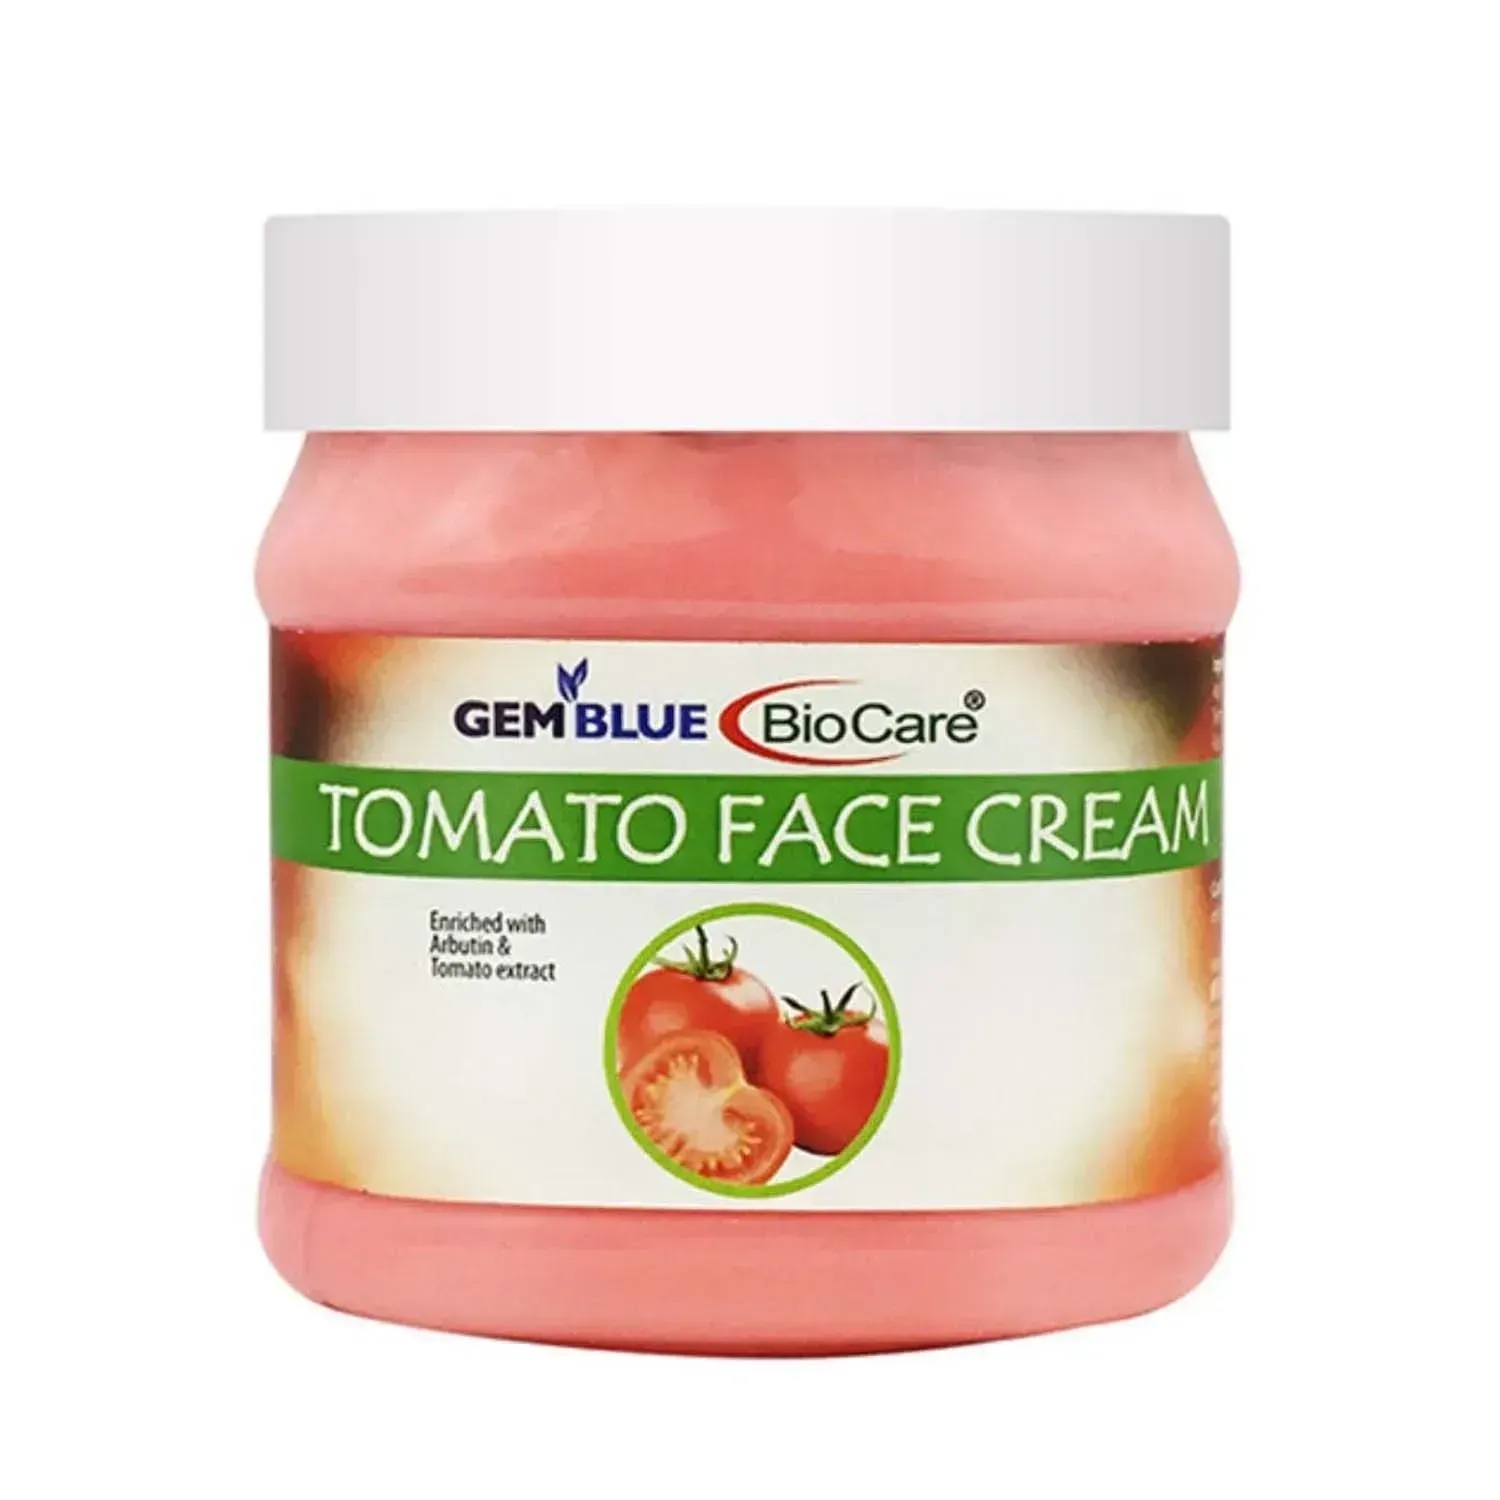 Gemblue Biocare | Gemblue Biocare Tomato Face Cream - (500ml)